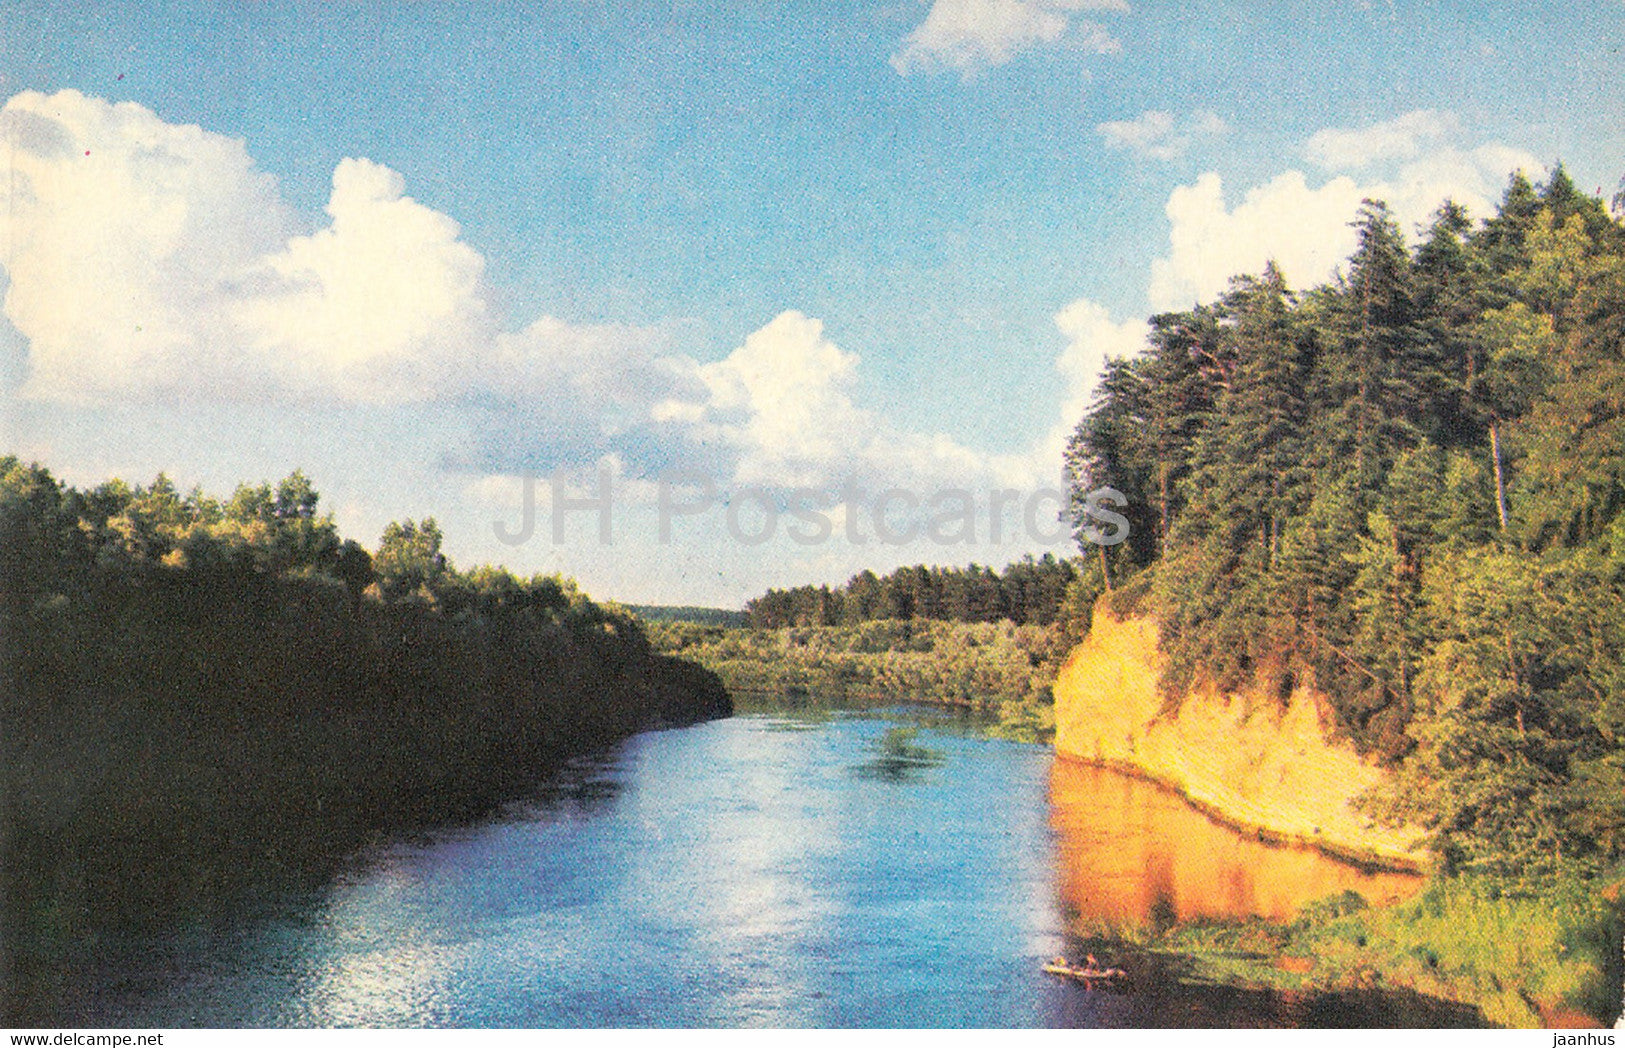 The Gauja National Park - Kazu Rock - 1976 - Latvia USSR - unused - JH Postcards